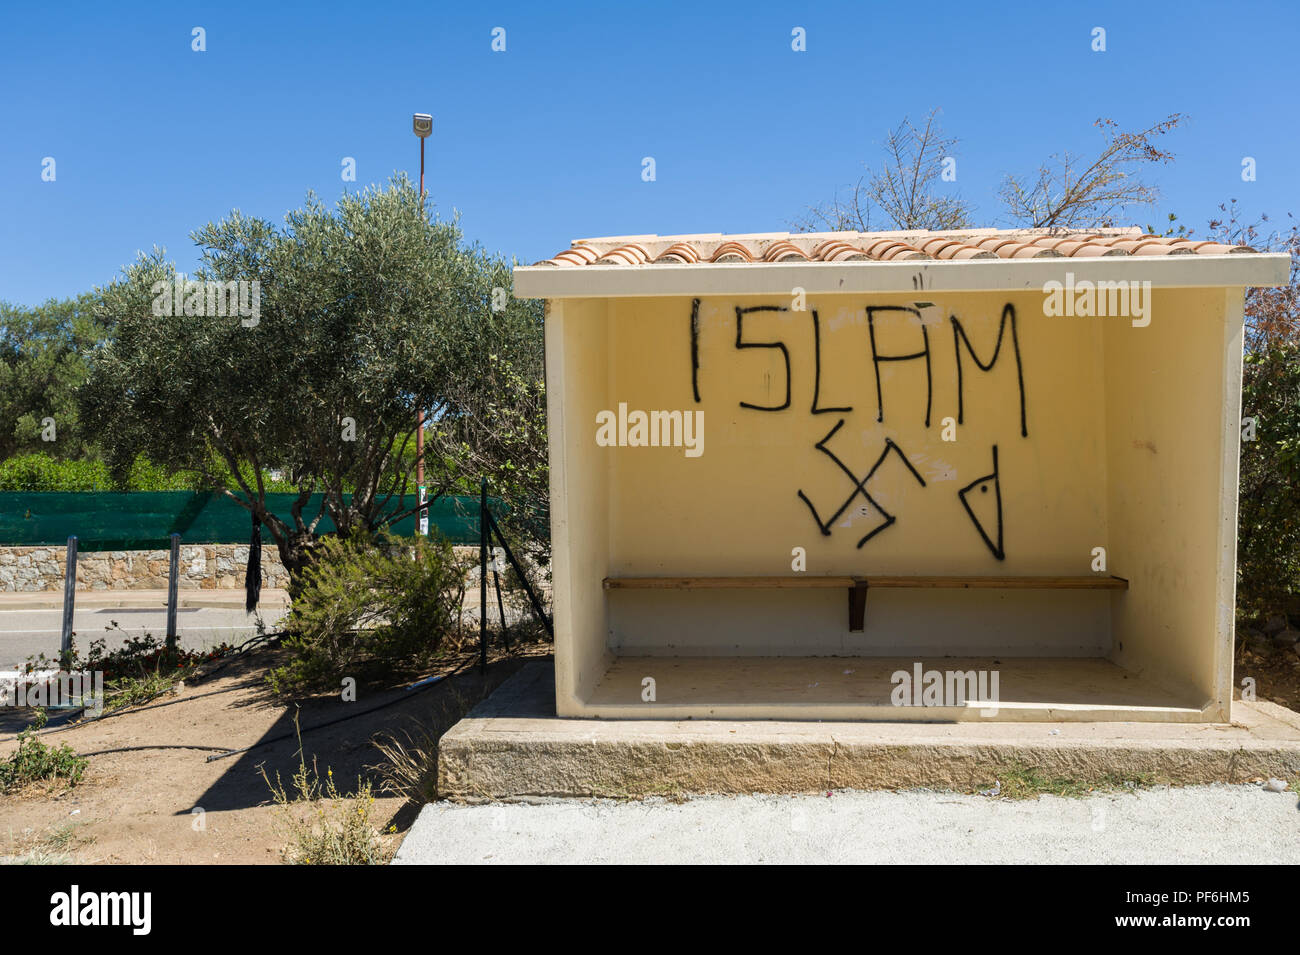 Les graffitis racistes islamique sur un abri bus à l'Île-Rousse, Corse, France, Europe Banque D'Images